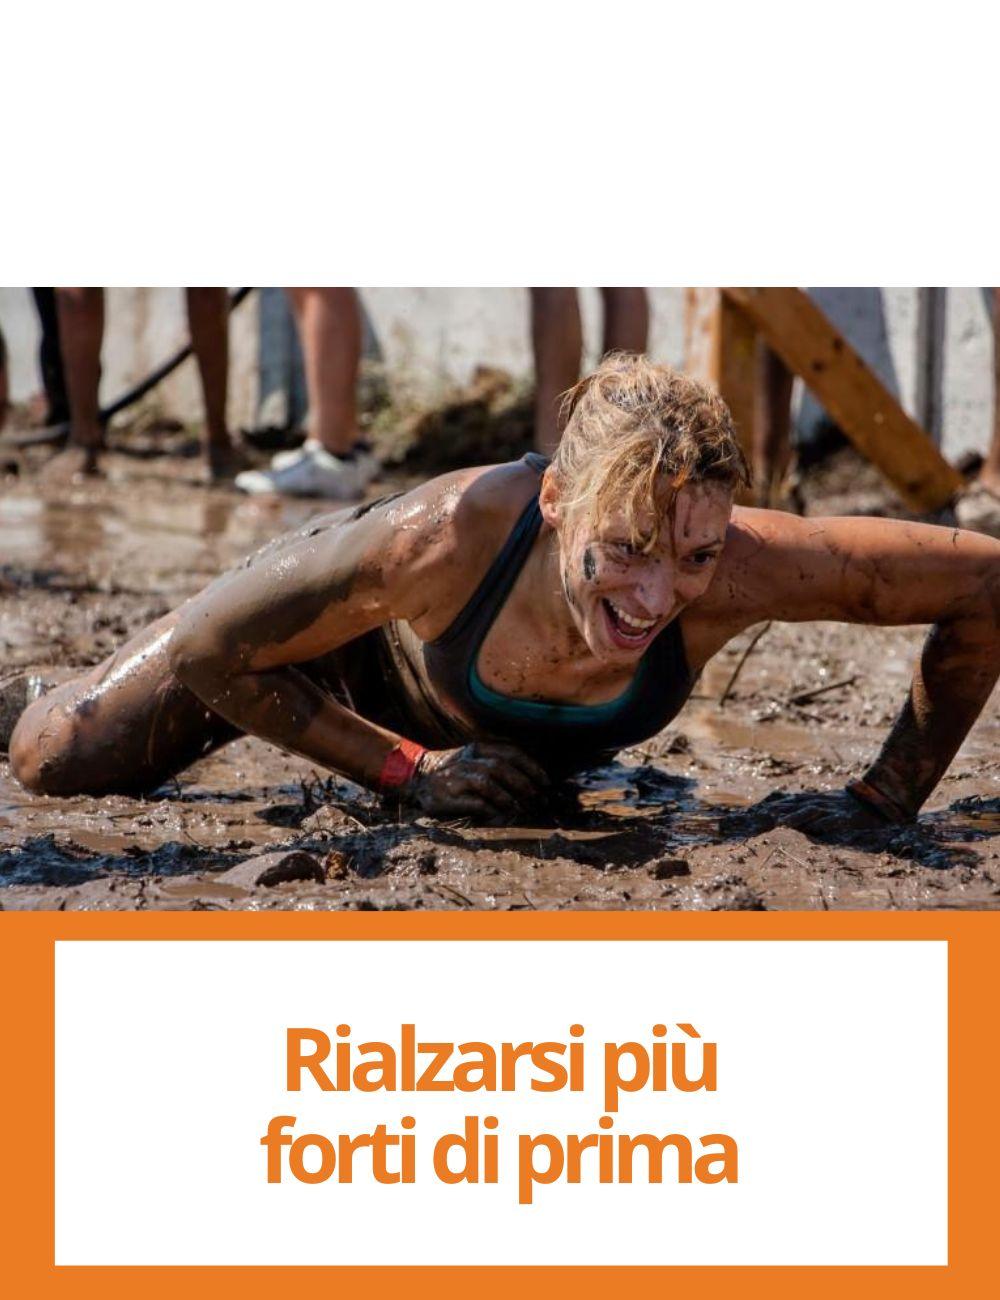 Immagine con link ad articoli su temi simili. L'immagine di una donna che si rialza dal fango rimanda all'articolo intitolato: Rialzarsi piu' forti di prima